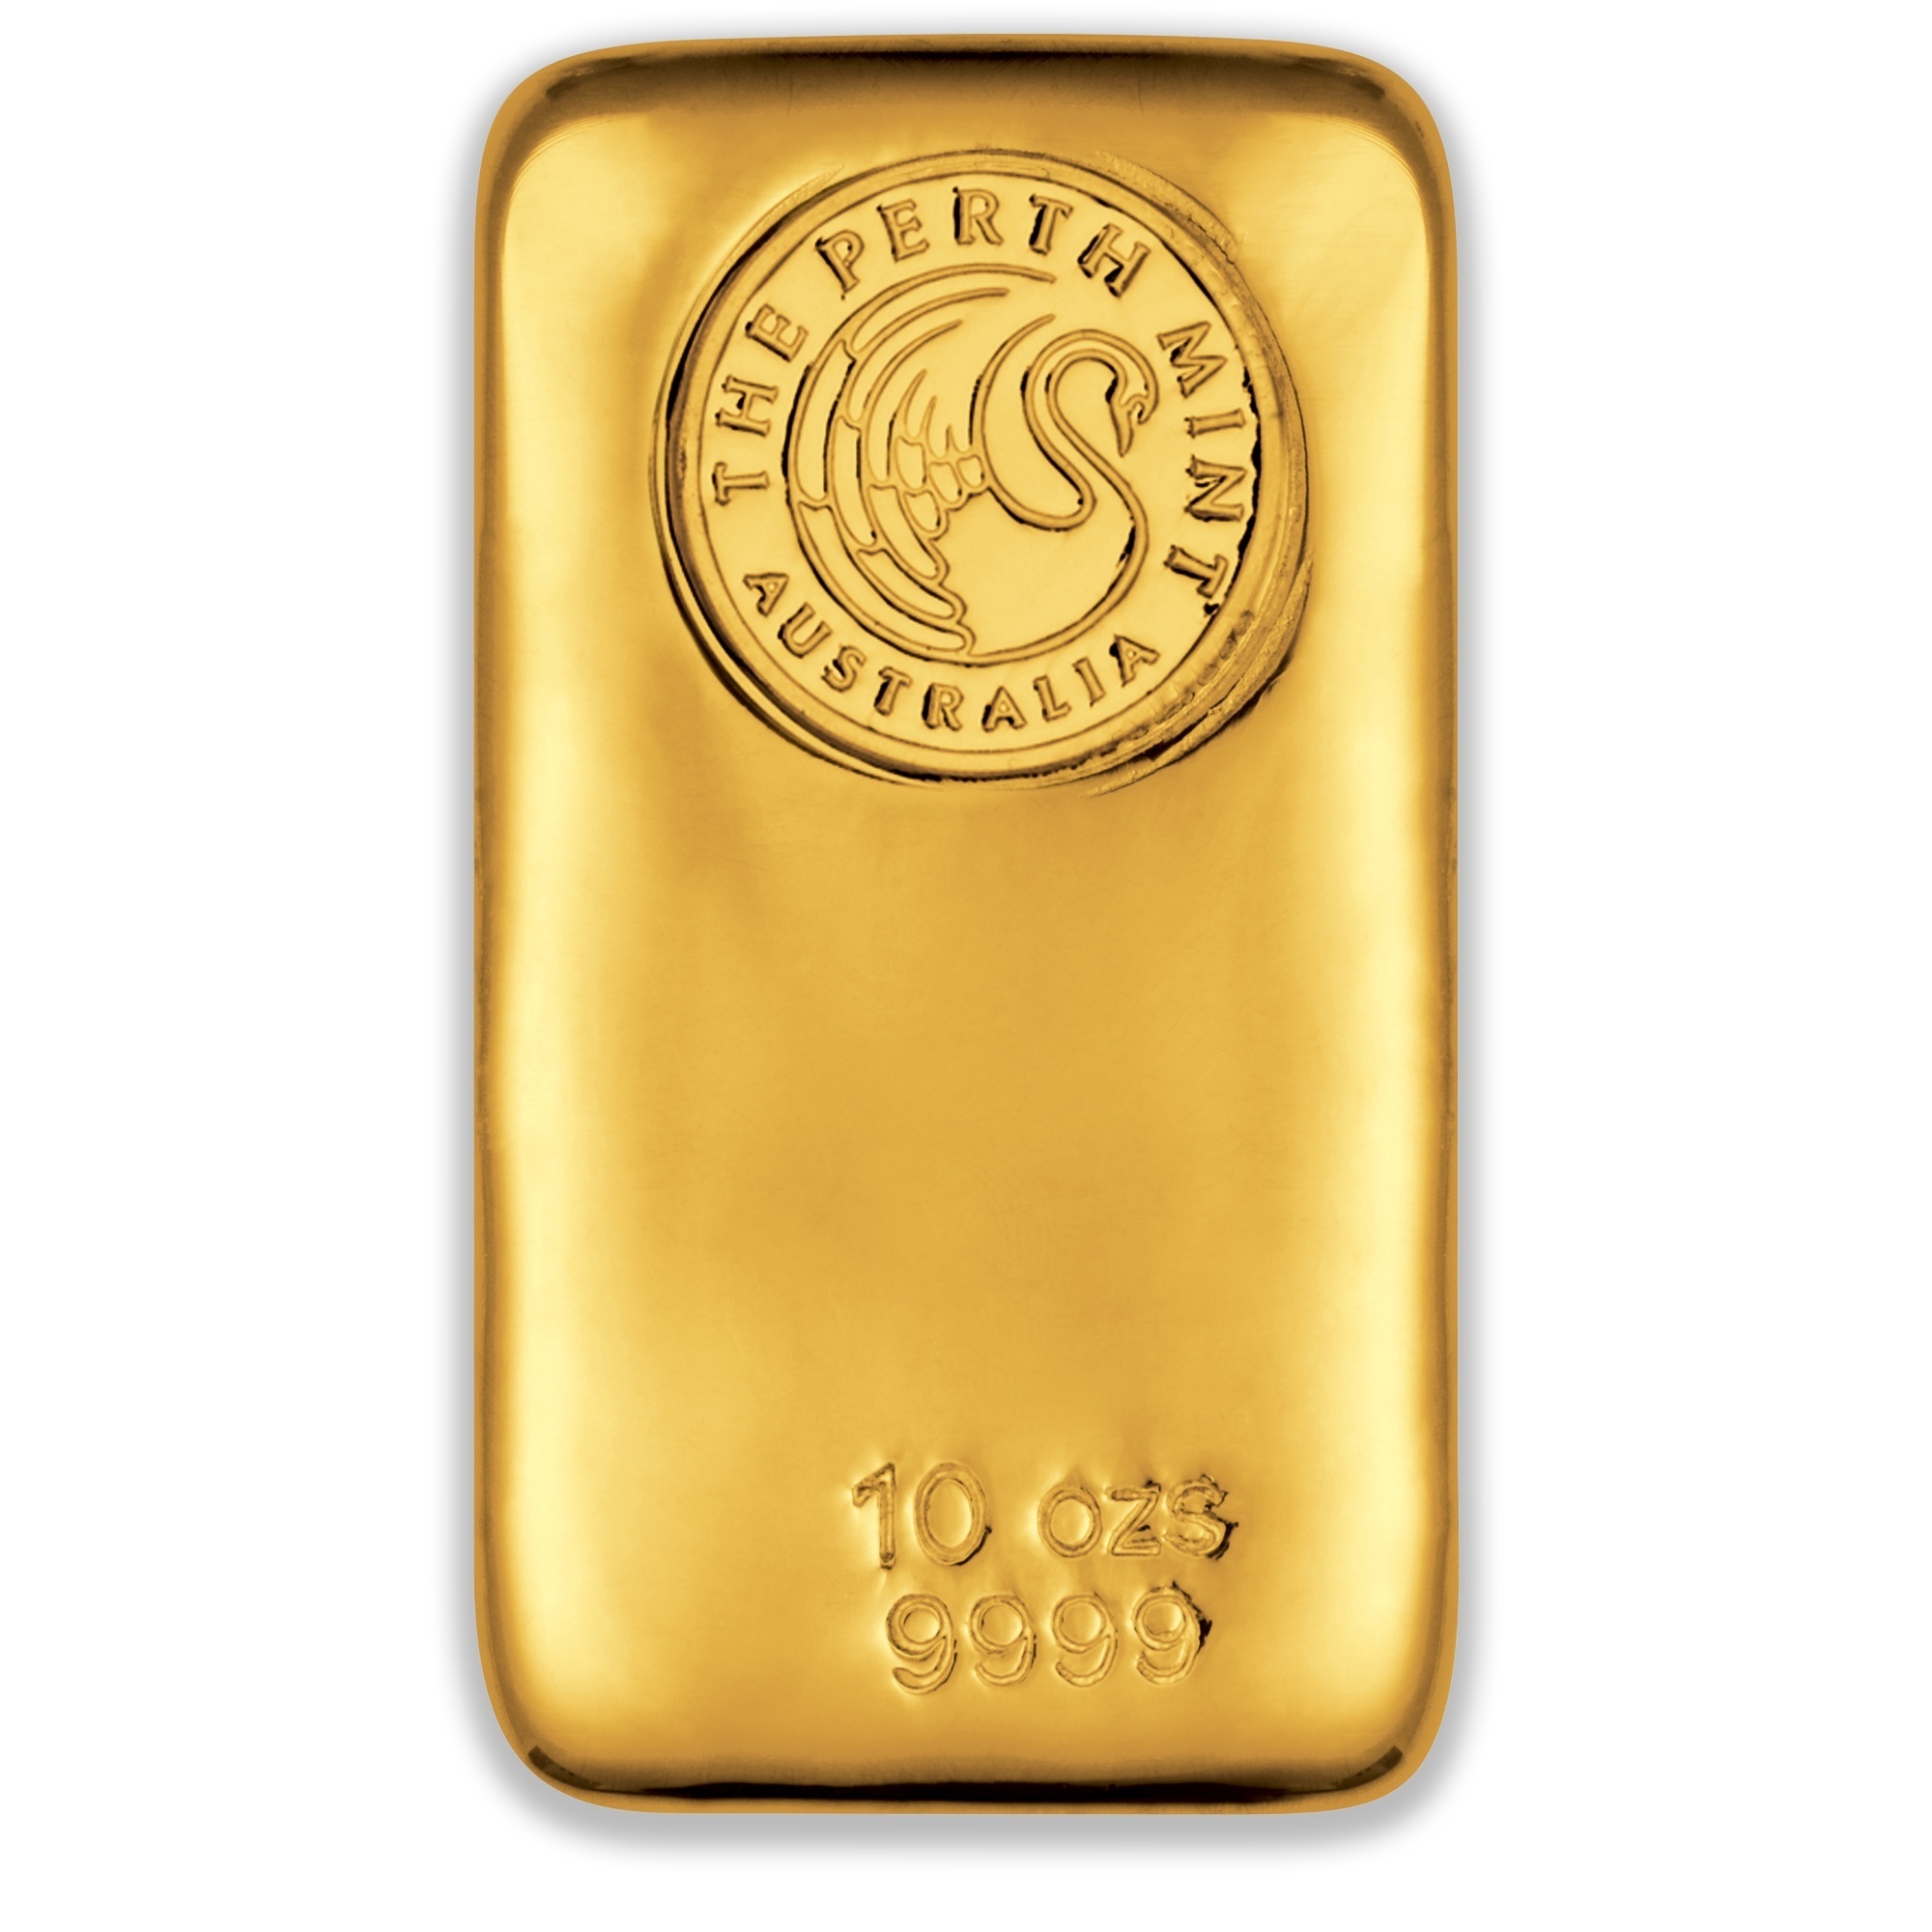 10oz Perth Mint Gold Cast Bar